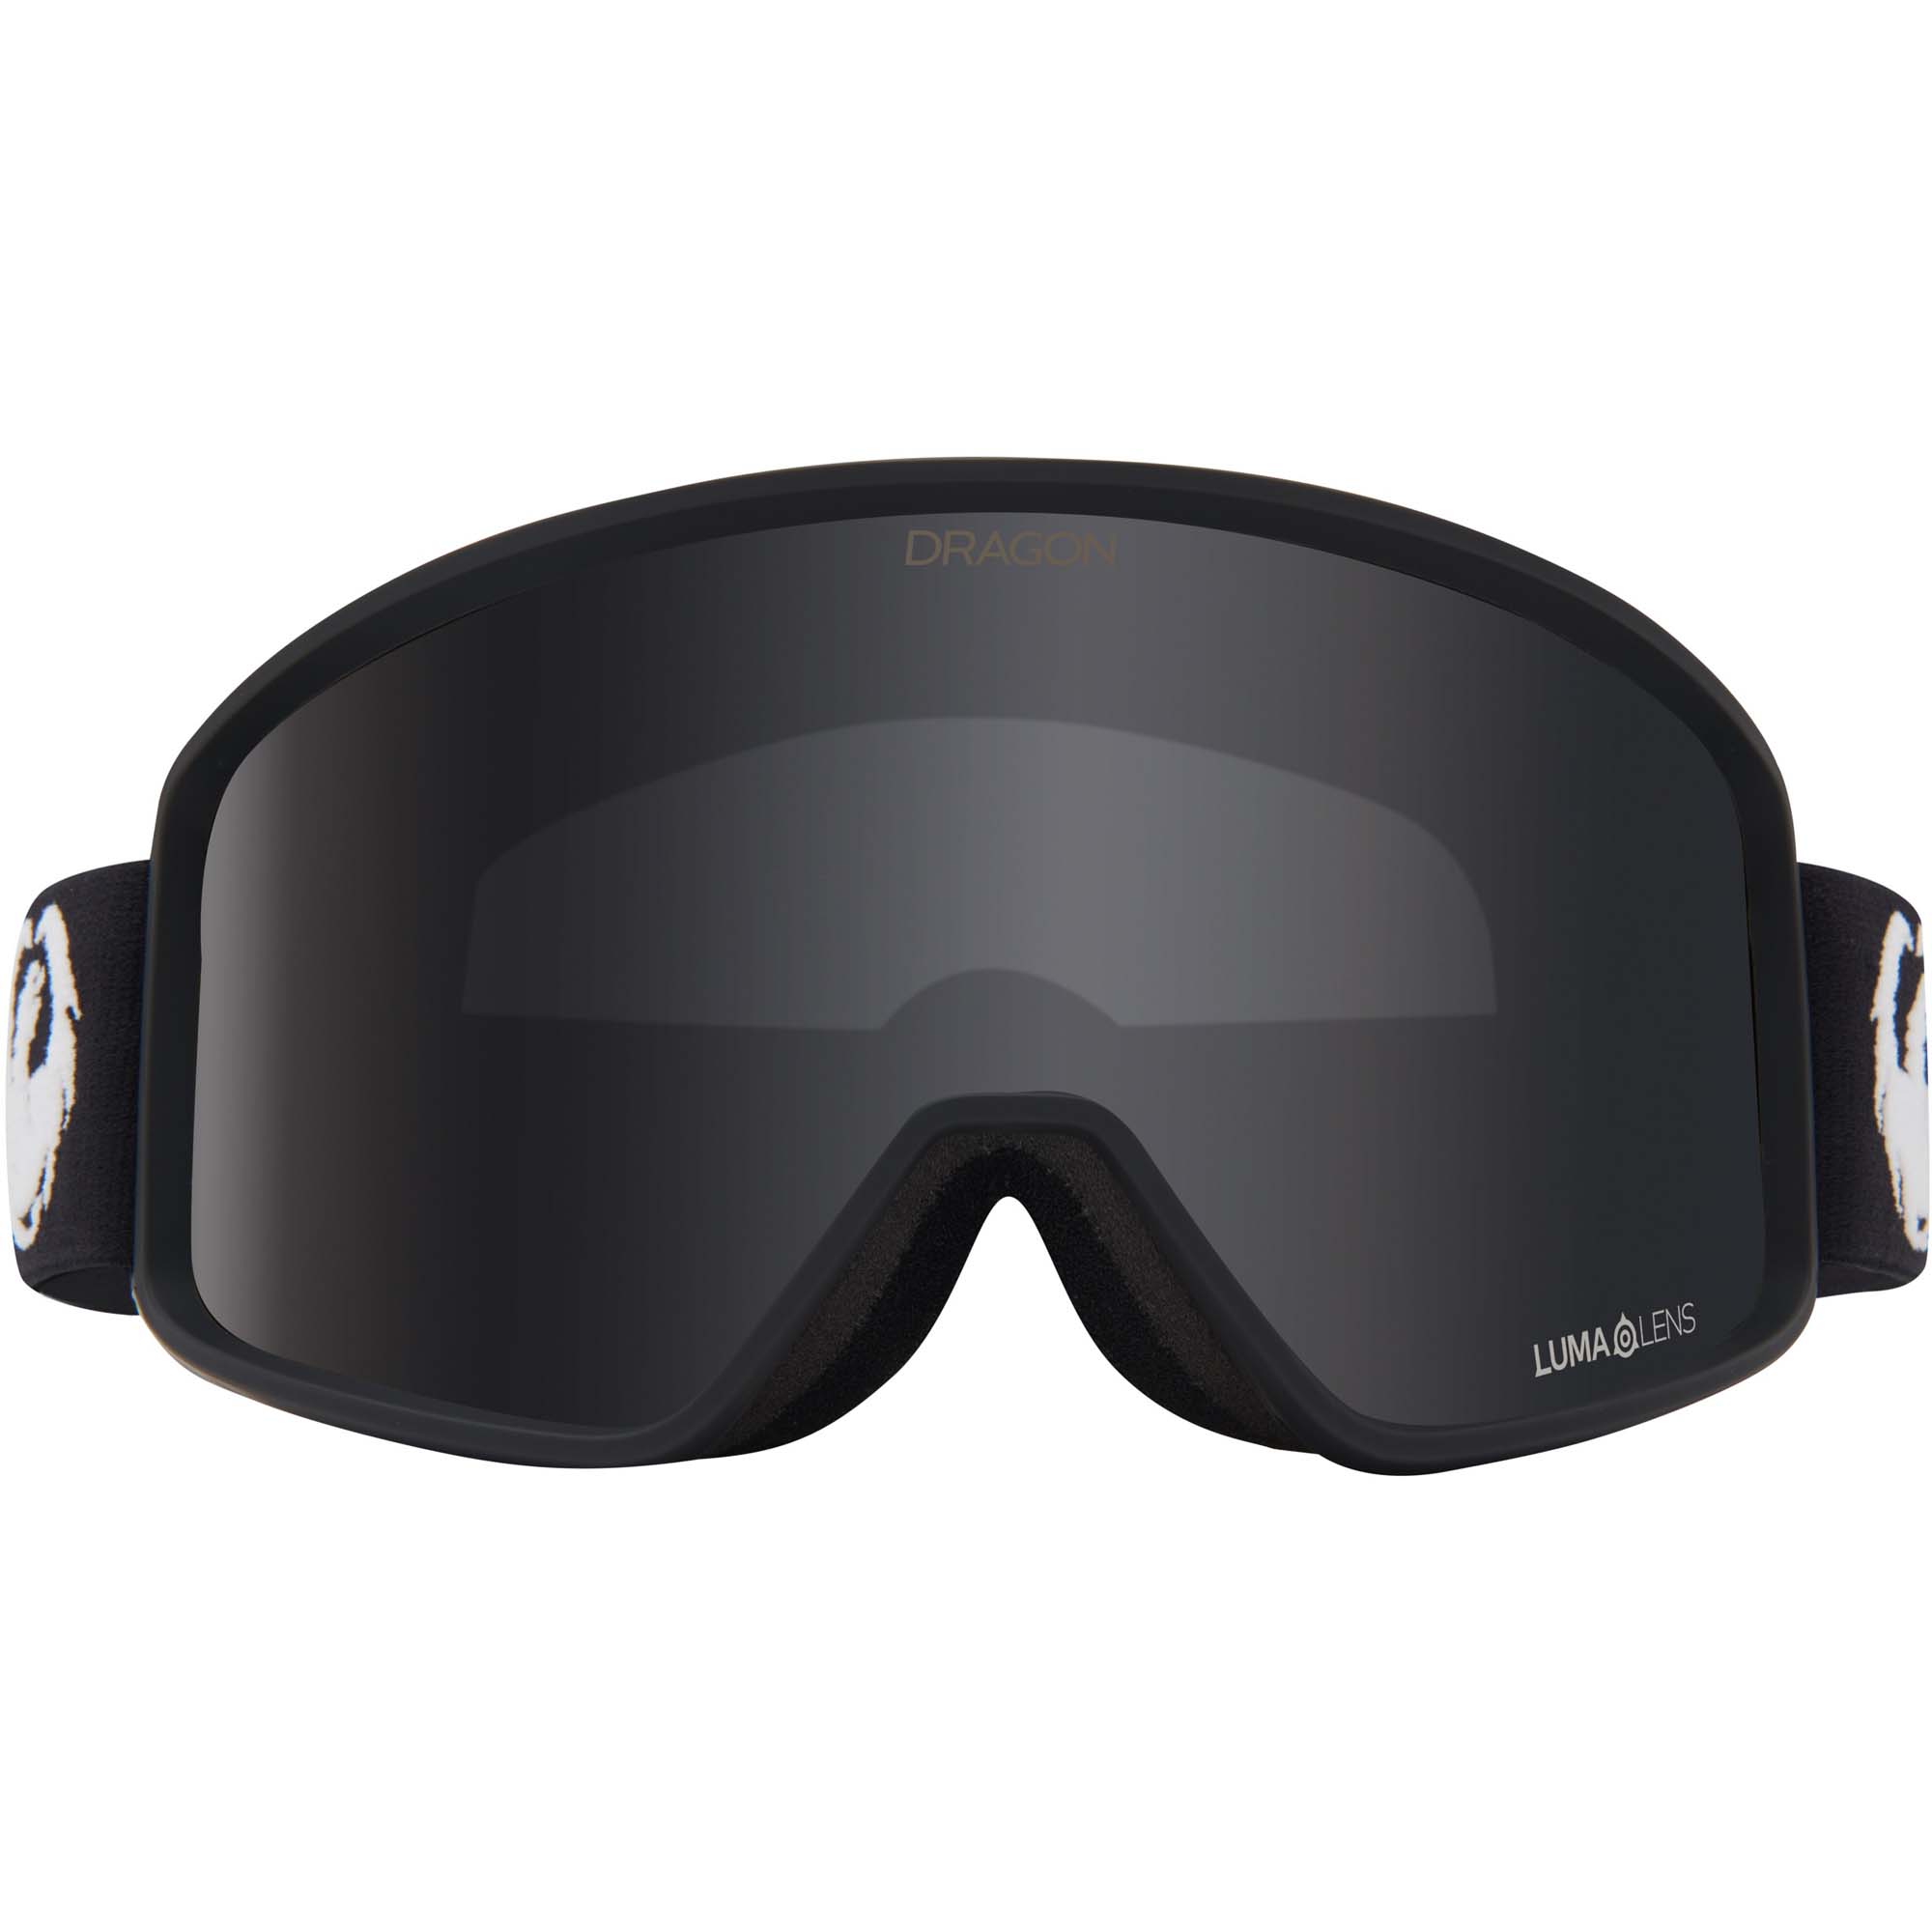 Dragon DXT OTG Snowboard/Ski Goggles